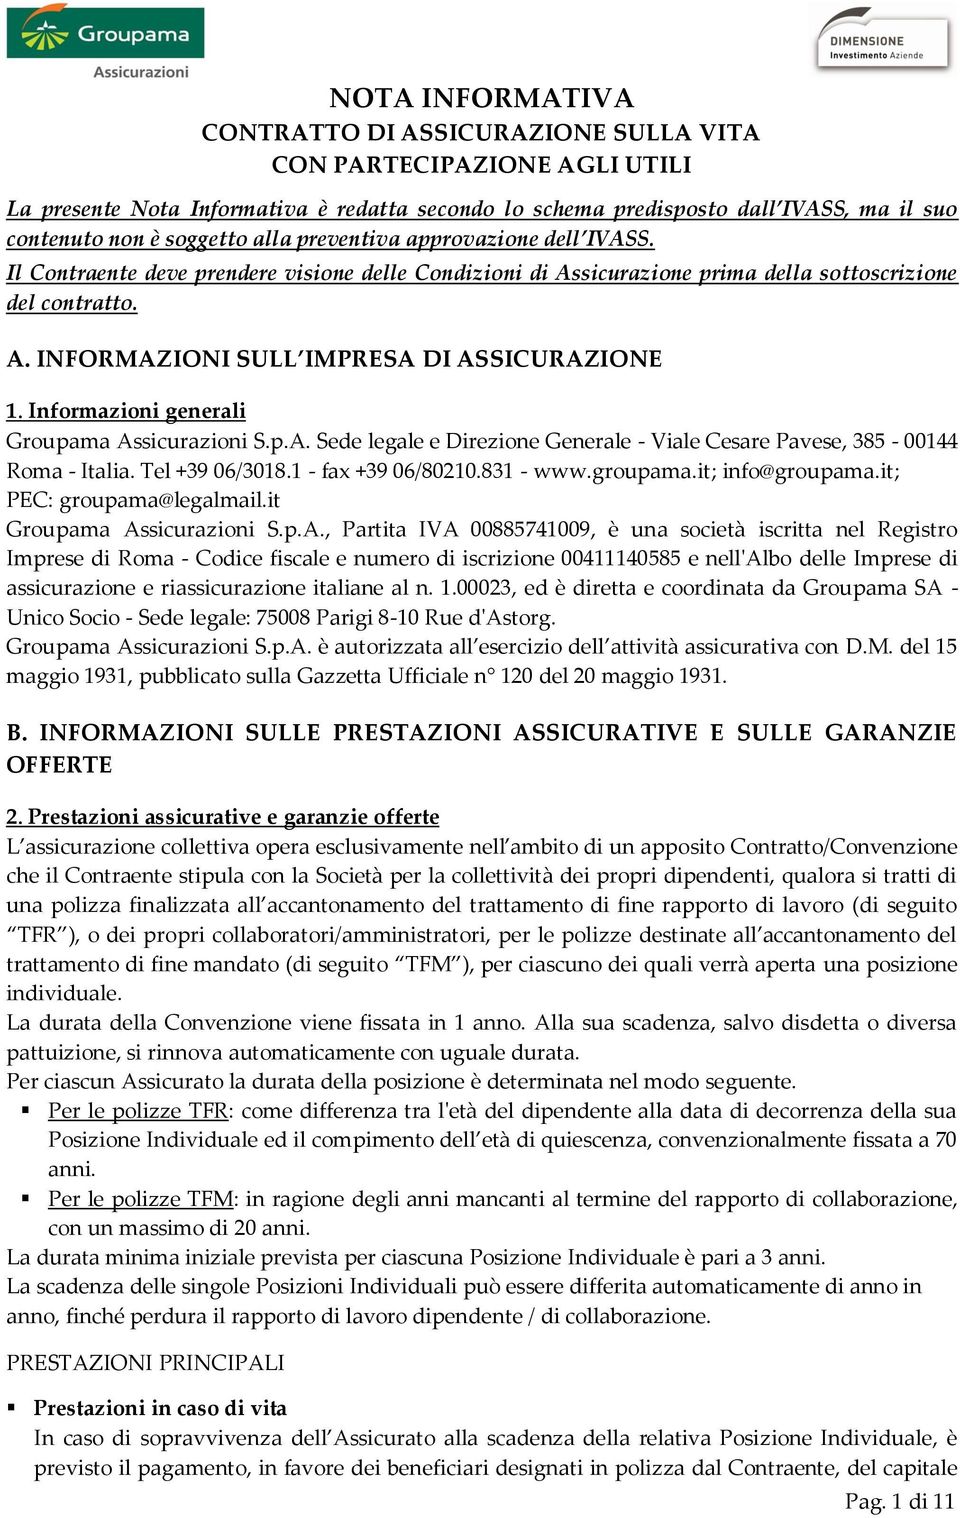 Informazioni generali Groupama Assicurazioni S.p.A. Sede legale e Direzione Generale - Viale Cesare Pavese, 385-00144 Roma - Italia. Tel +39 06/3018.1 - fax +39 06/80210.831 - www.groupama.